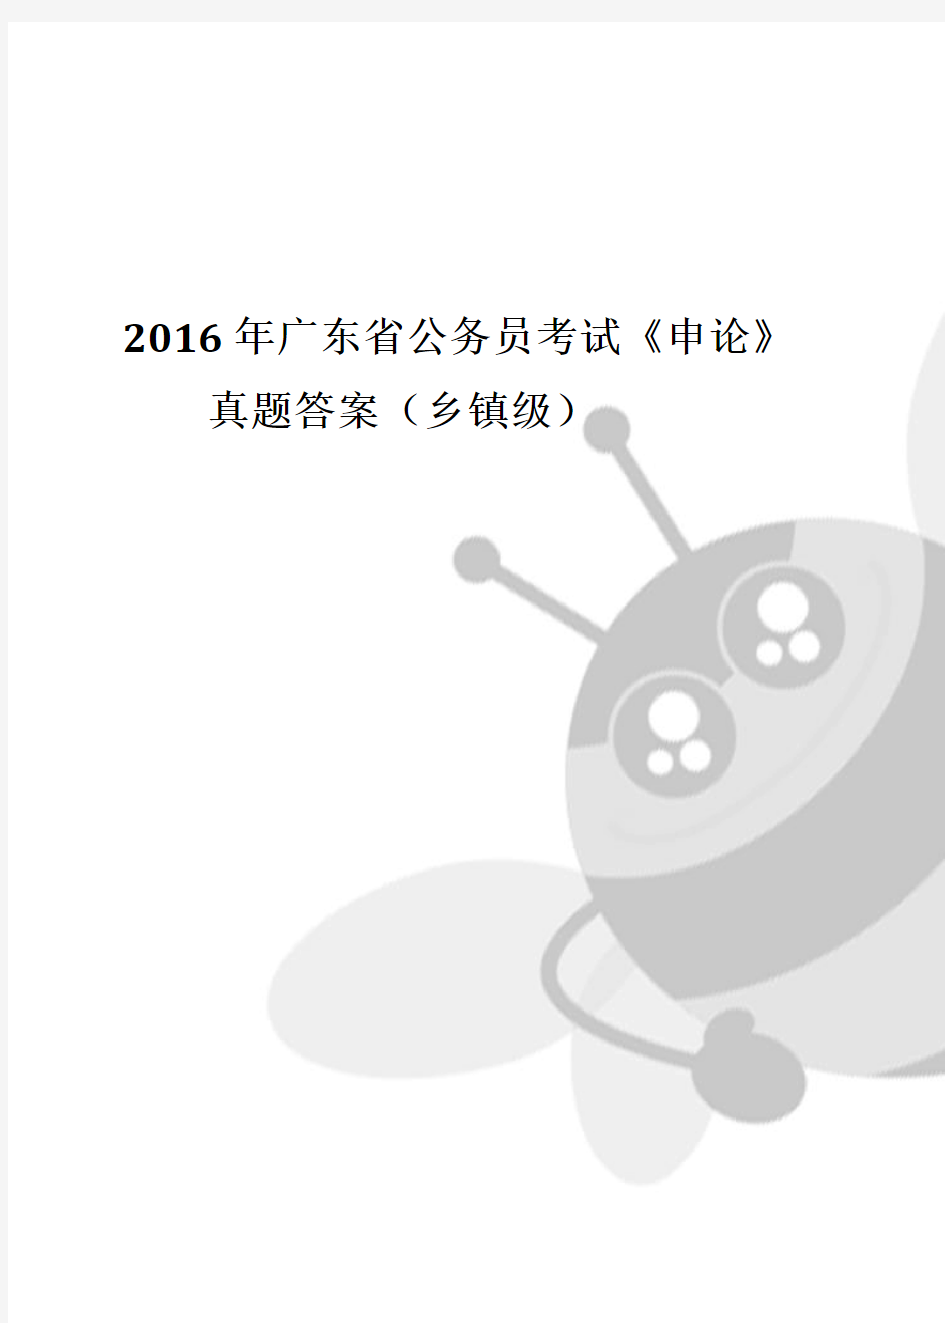 2016年广东省公务员考试申论真题答案(乡镇)